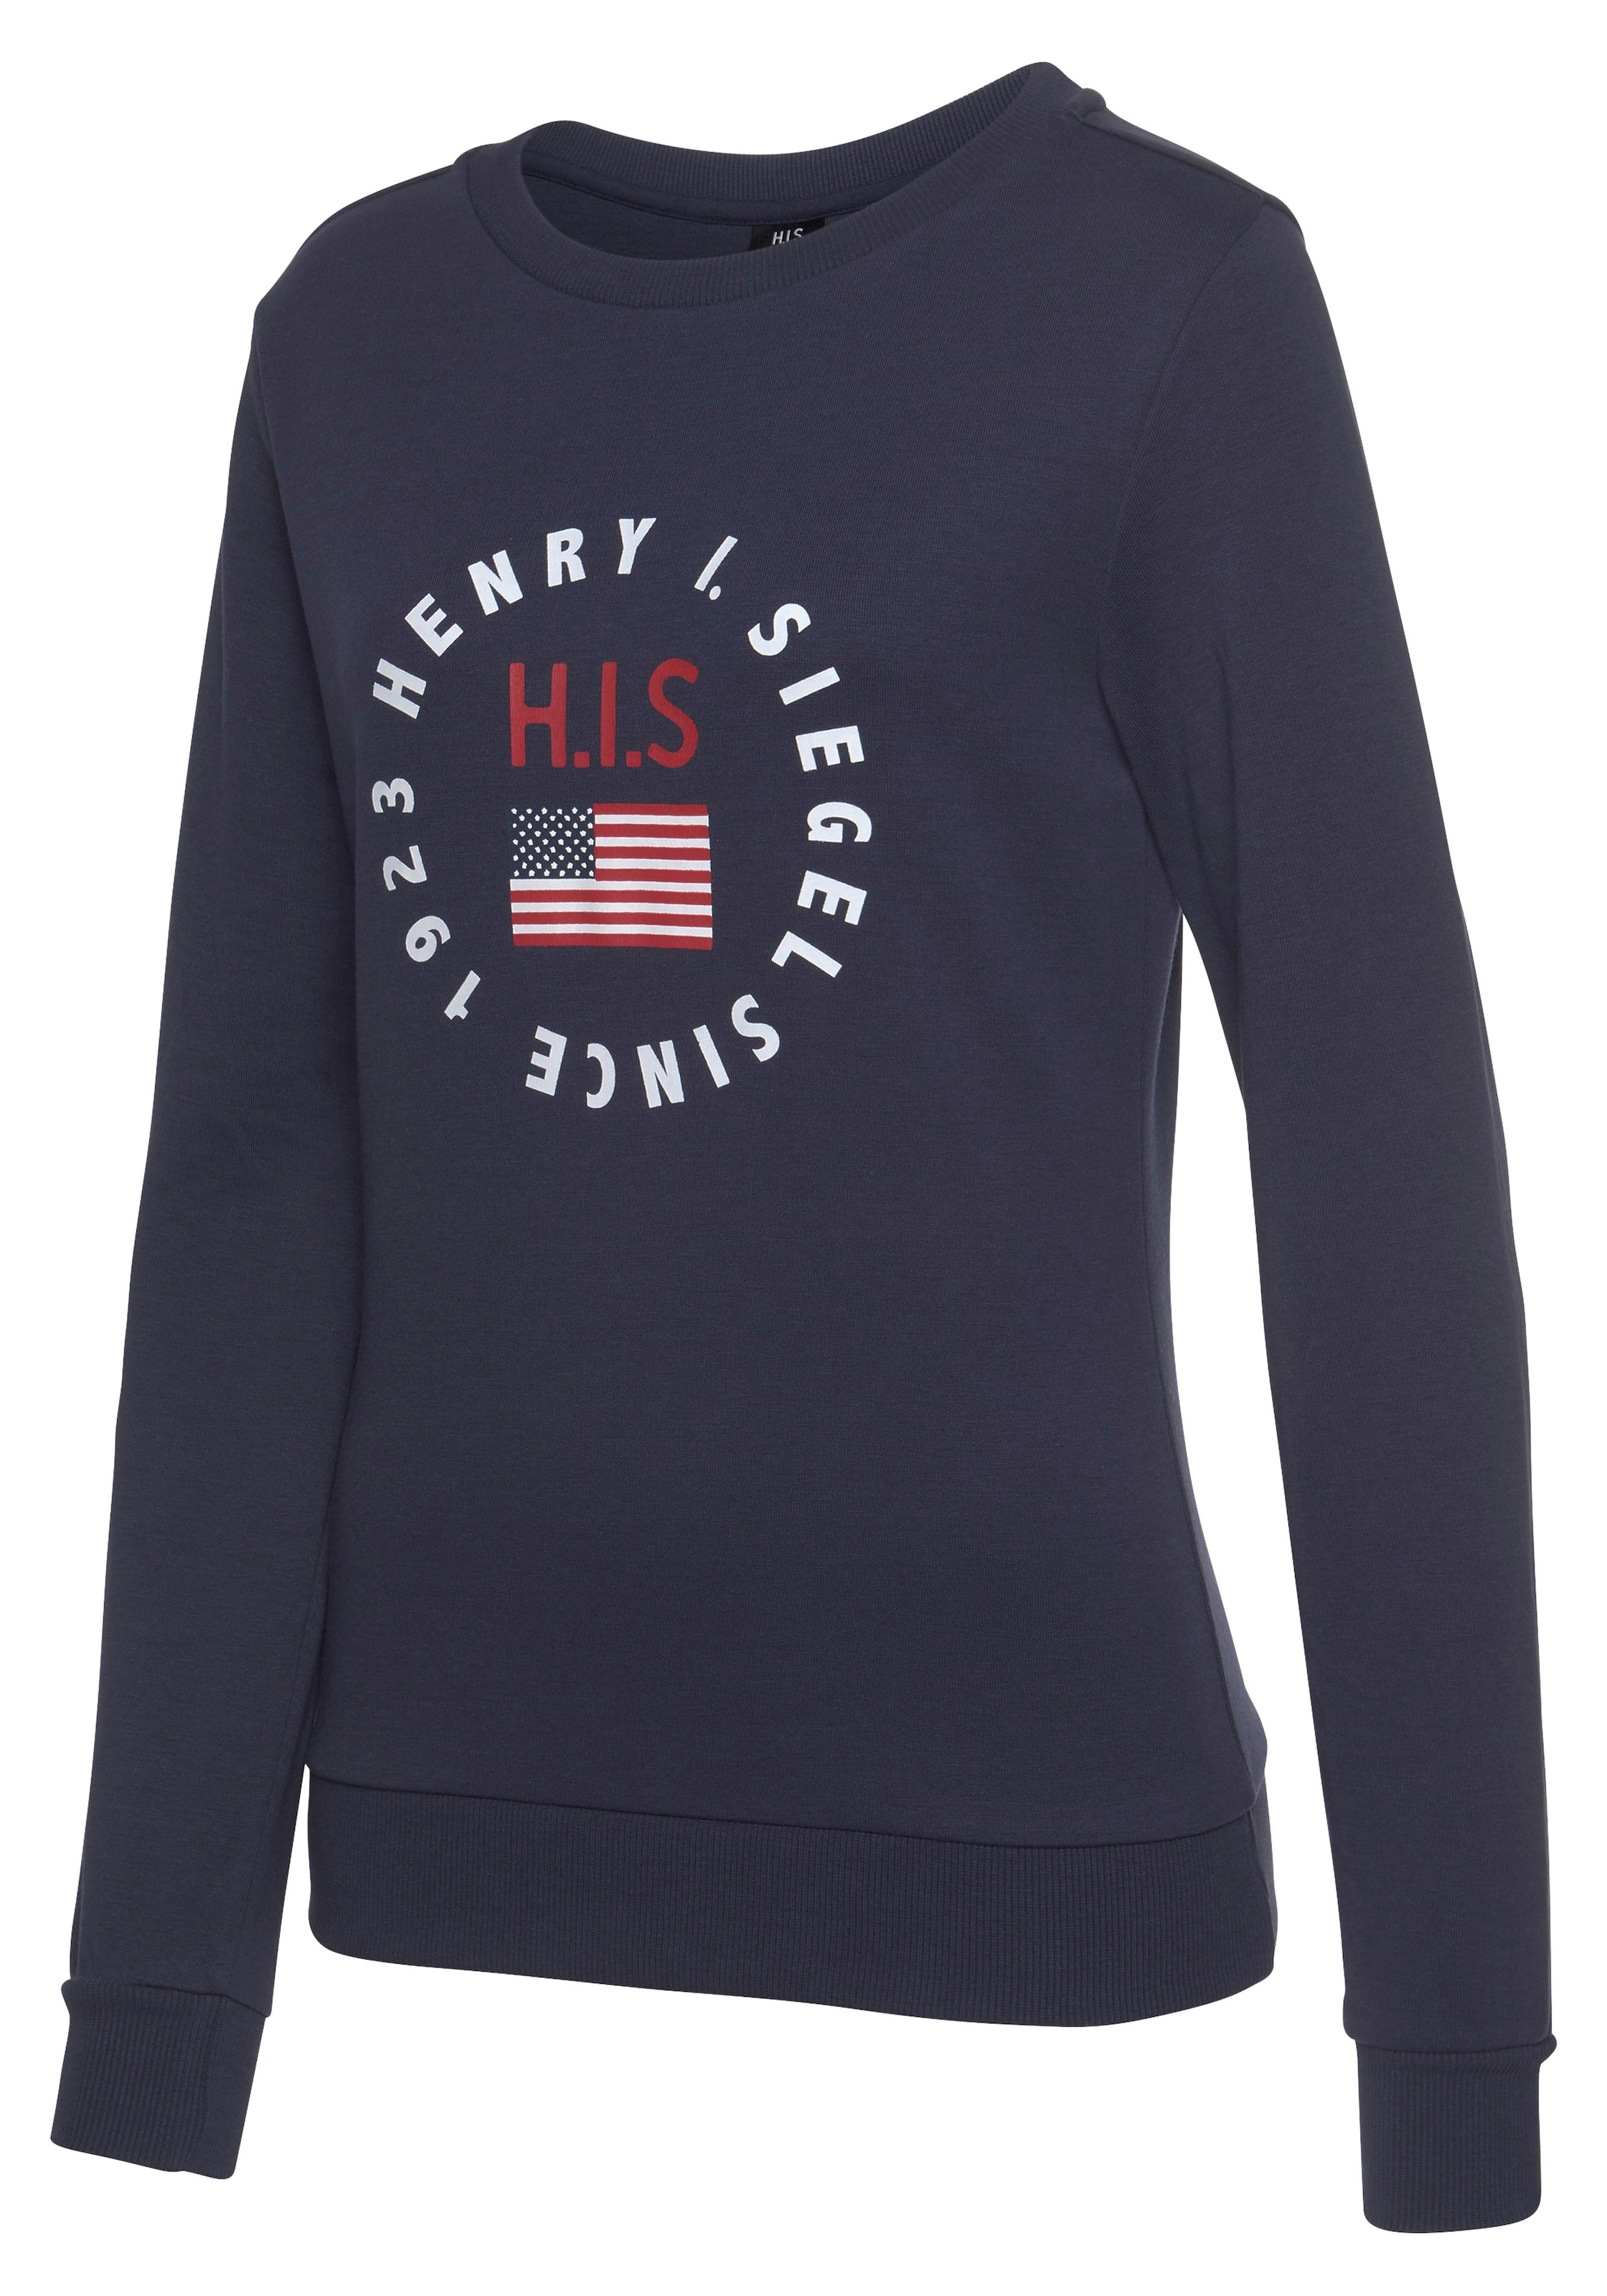 jetzt mit Sweatshirt, H.I.S Logodruck bestellen